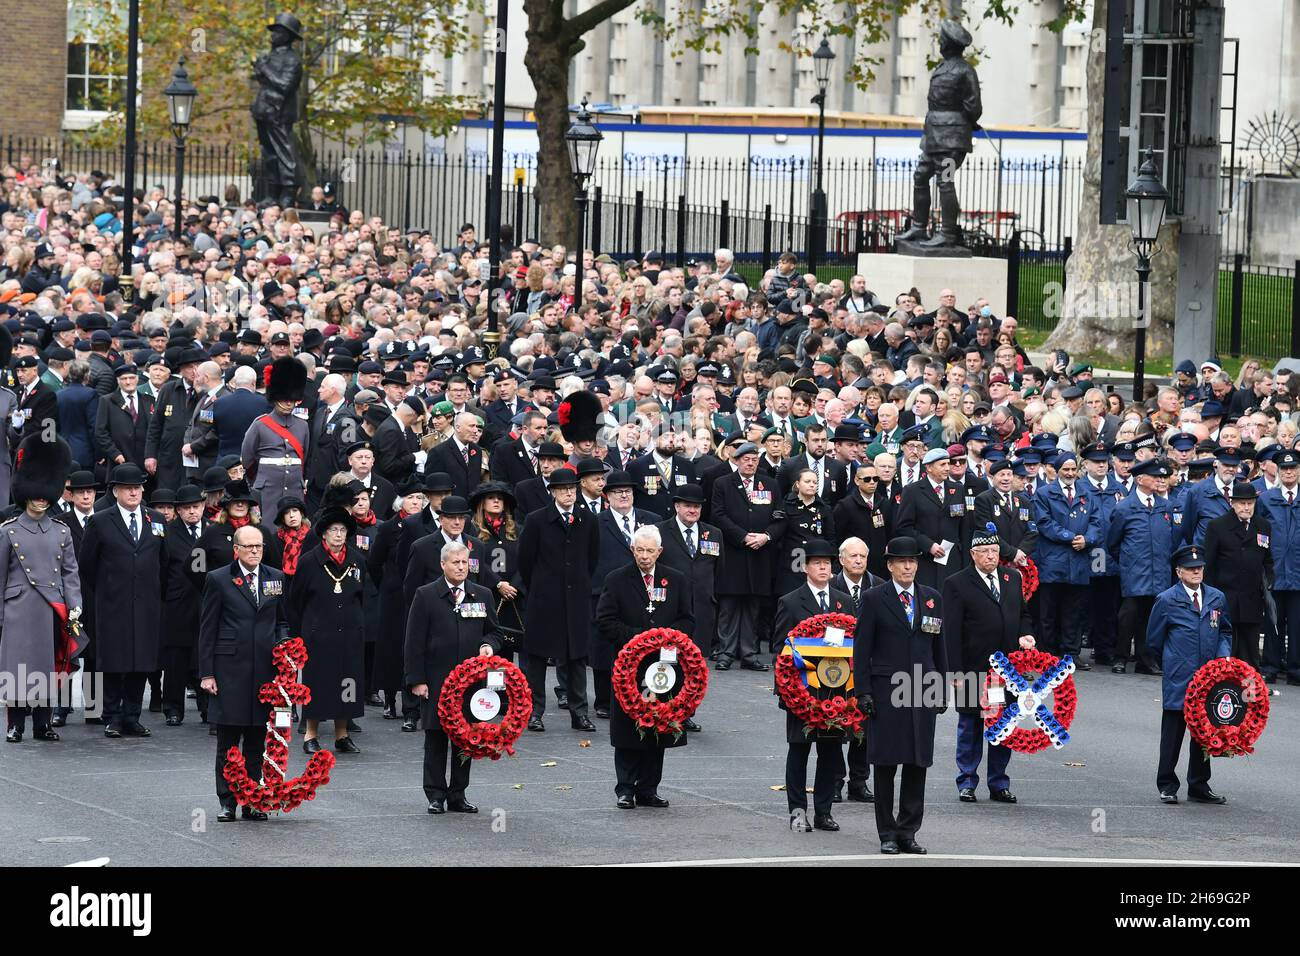 Veteranen marschieren während des Gedenksonntagsgottesdienstes im Cenotaph in Whitehall, London, entlang von Whitehall. Bilddatum: Sonntag, 14. November 2021. Stockfoto